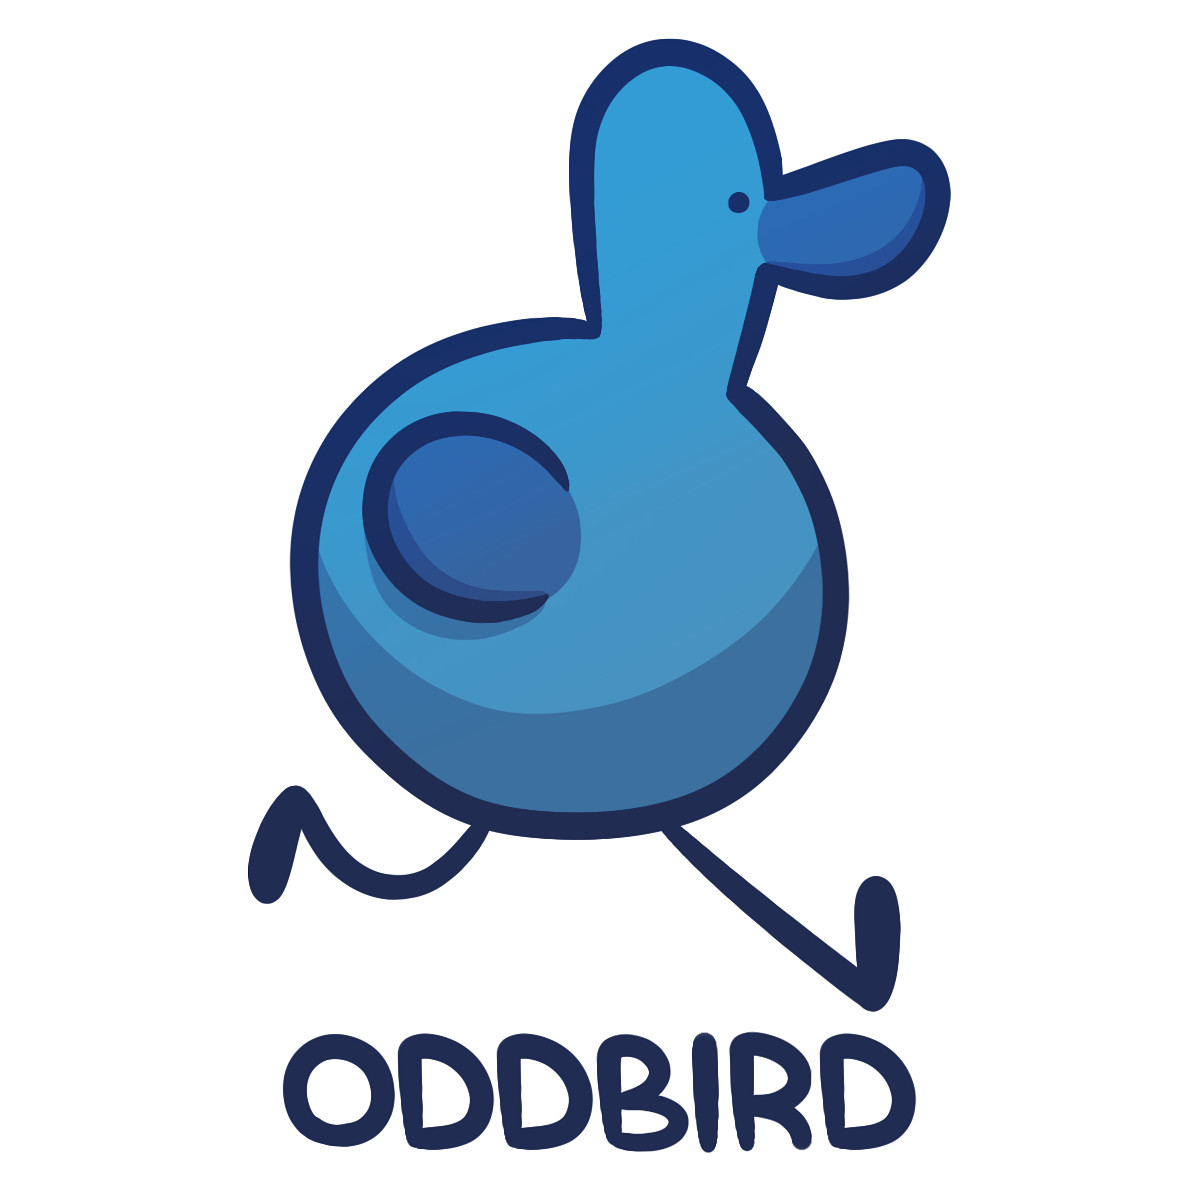 OddBird